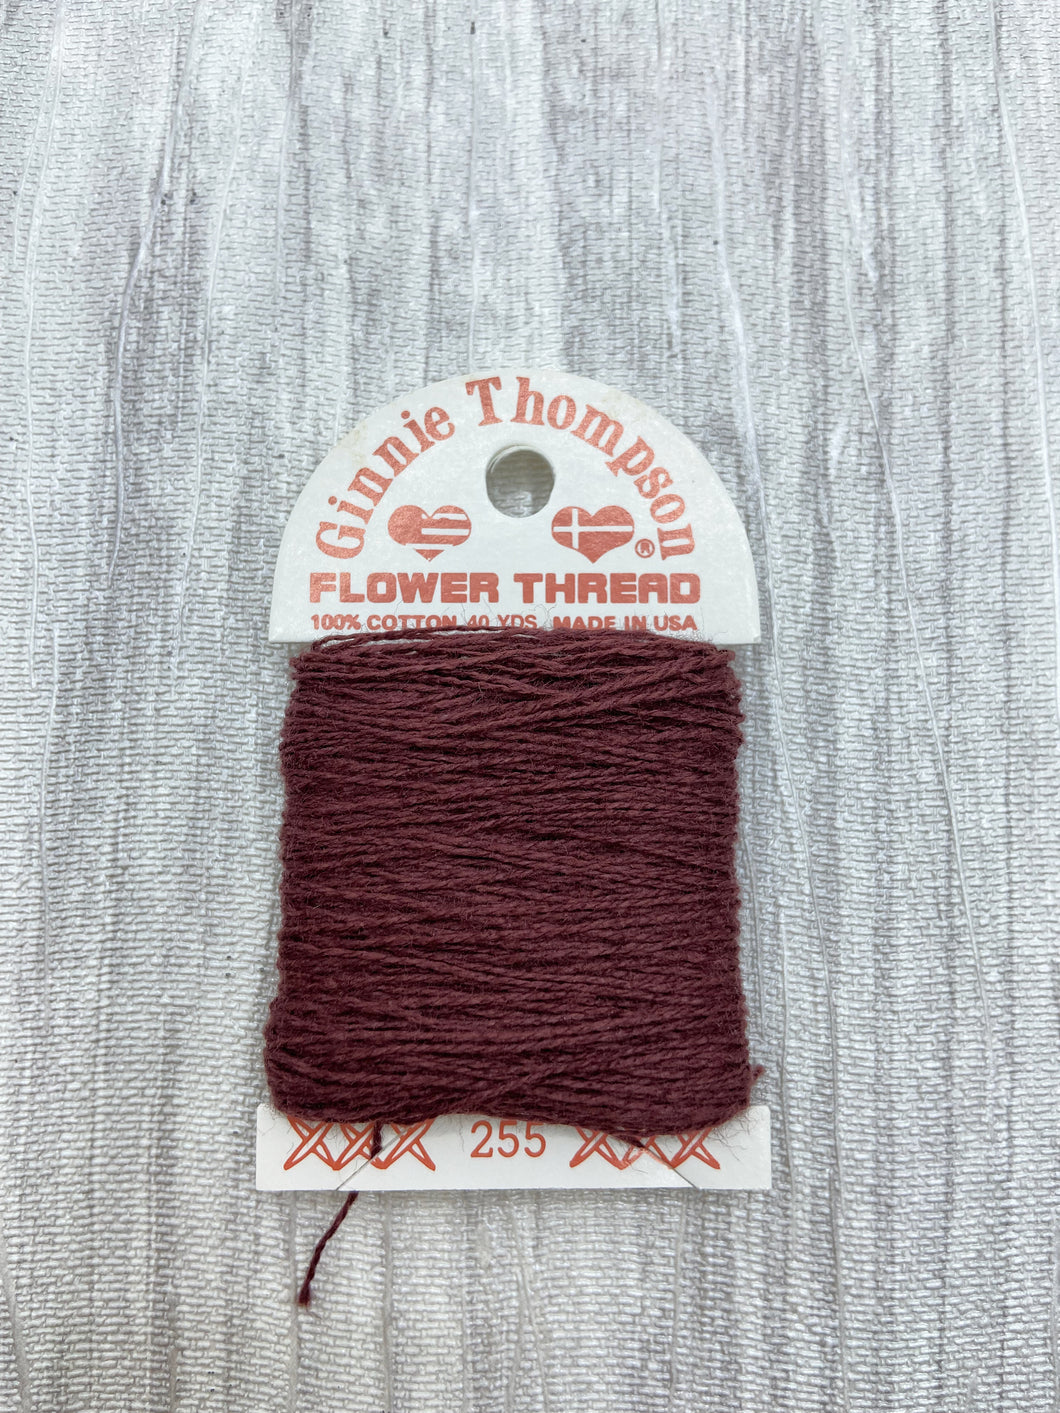 Very Dark Red (255) Ginnie Thompson Flower Thread